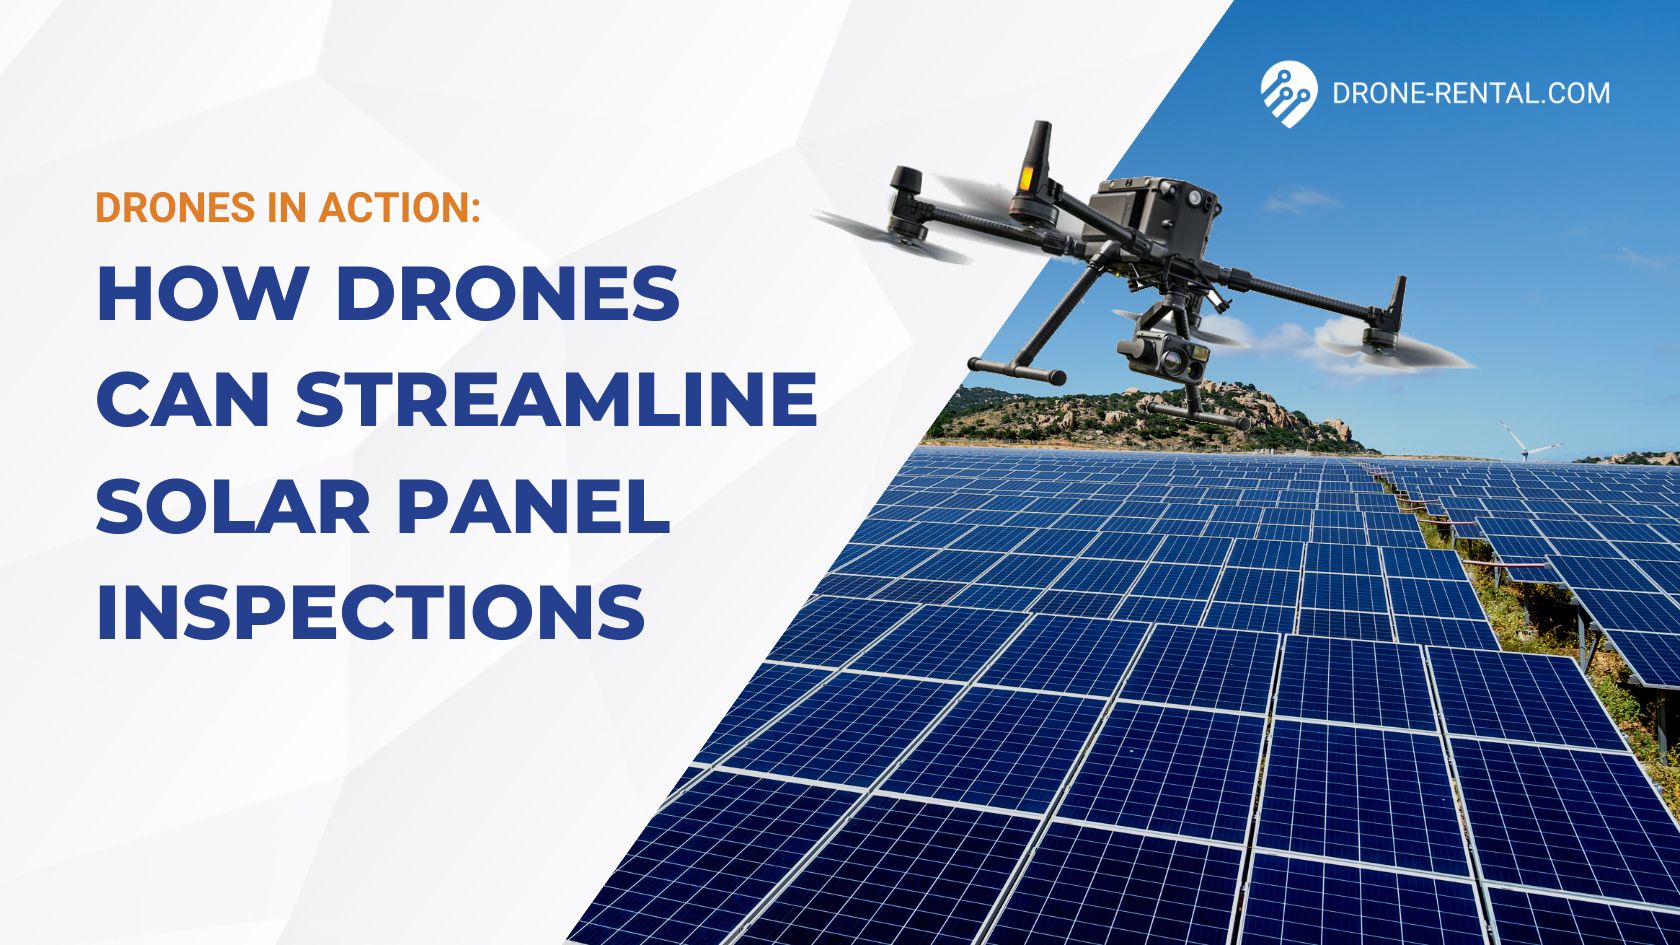 Wie Drohnen die Inspektion von Solarmodulen vereinfachen können